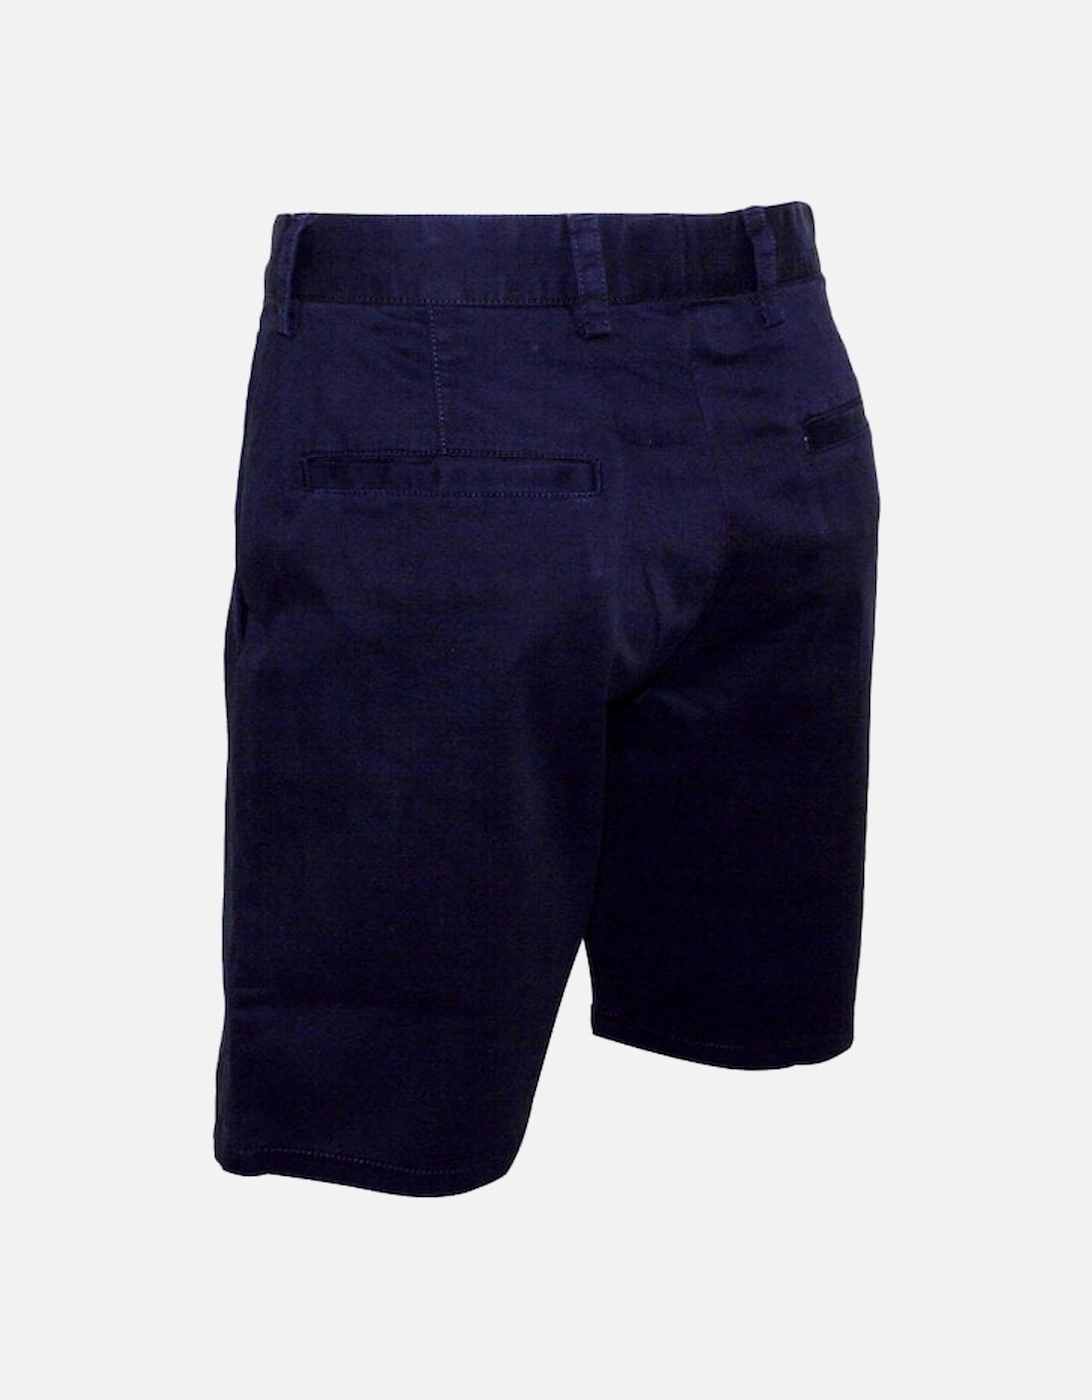 Classic Chino Shorts, Navy